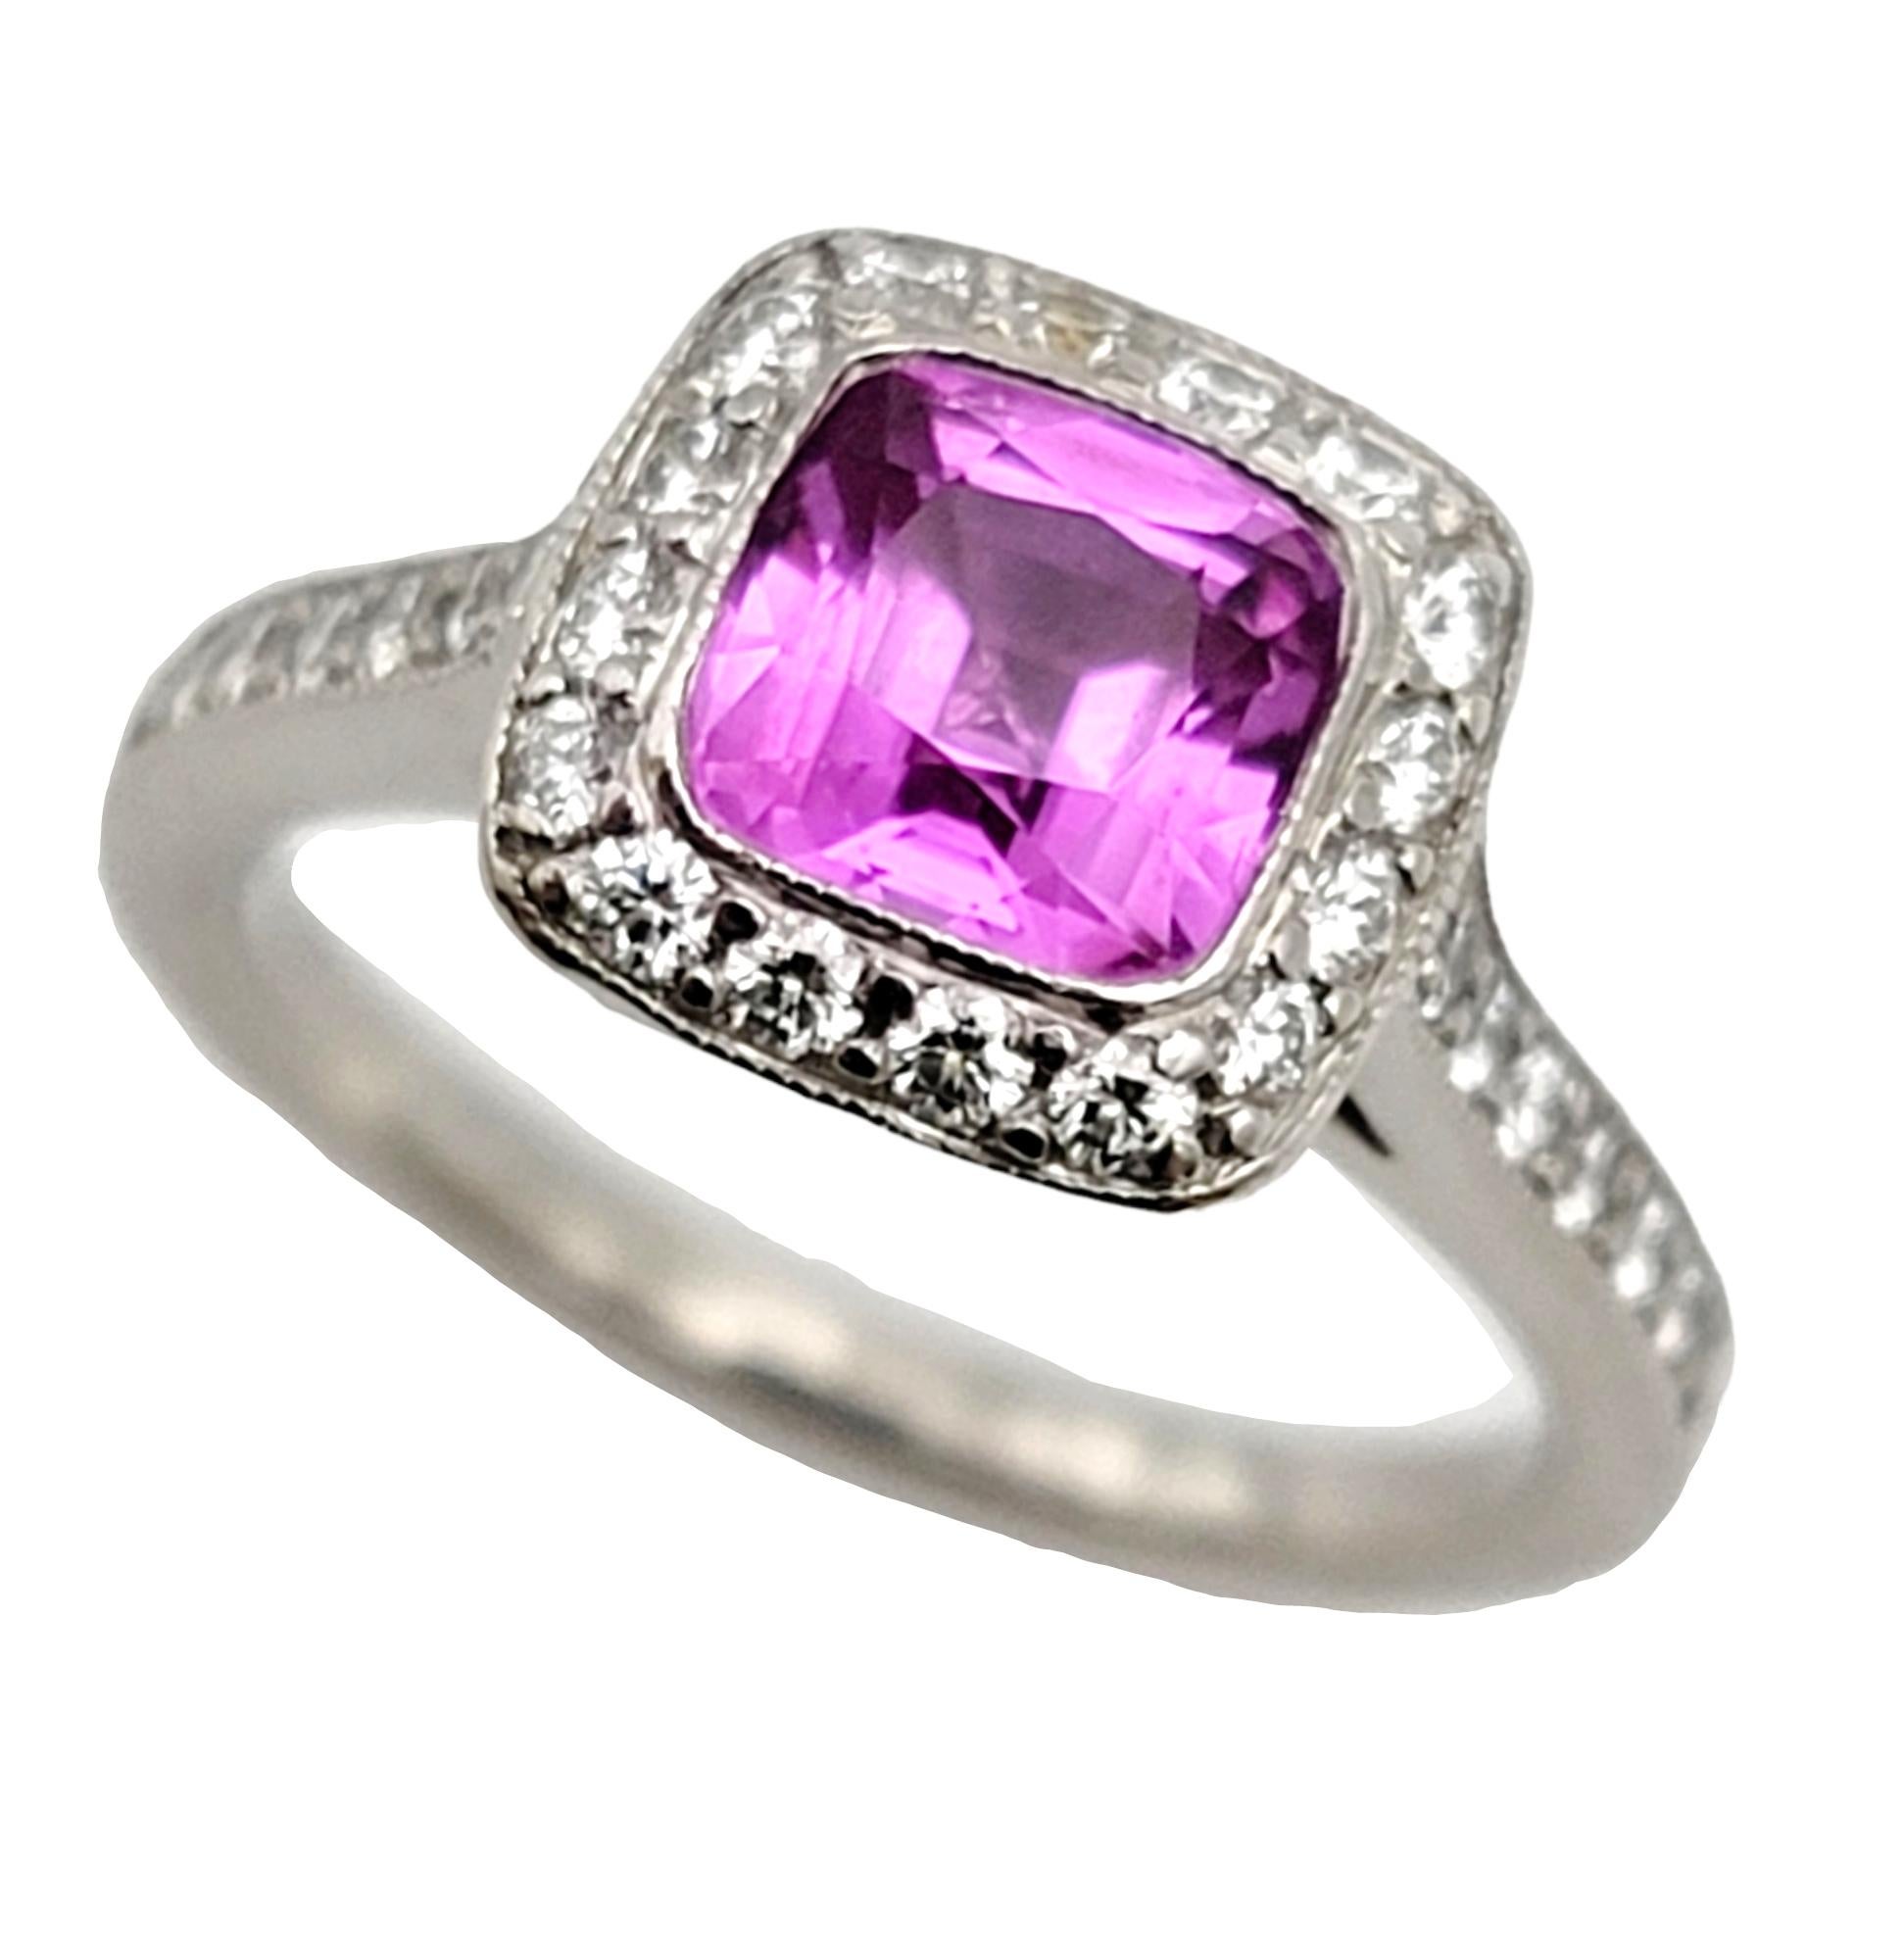 Taille de l'anneau 4.5 

Bague de fiançailles de Tiffany & Co. à couper le souffle, avec saphir rose et diamants en halo. Cette bague vibrante et ultra féminine a été inspirée par le glamour de la période édouardienne et rayonnera absolument sur son